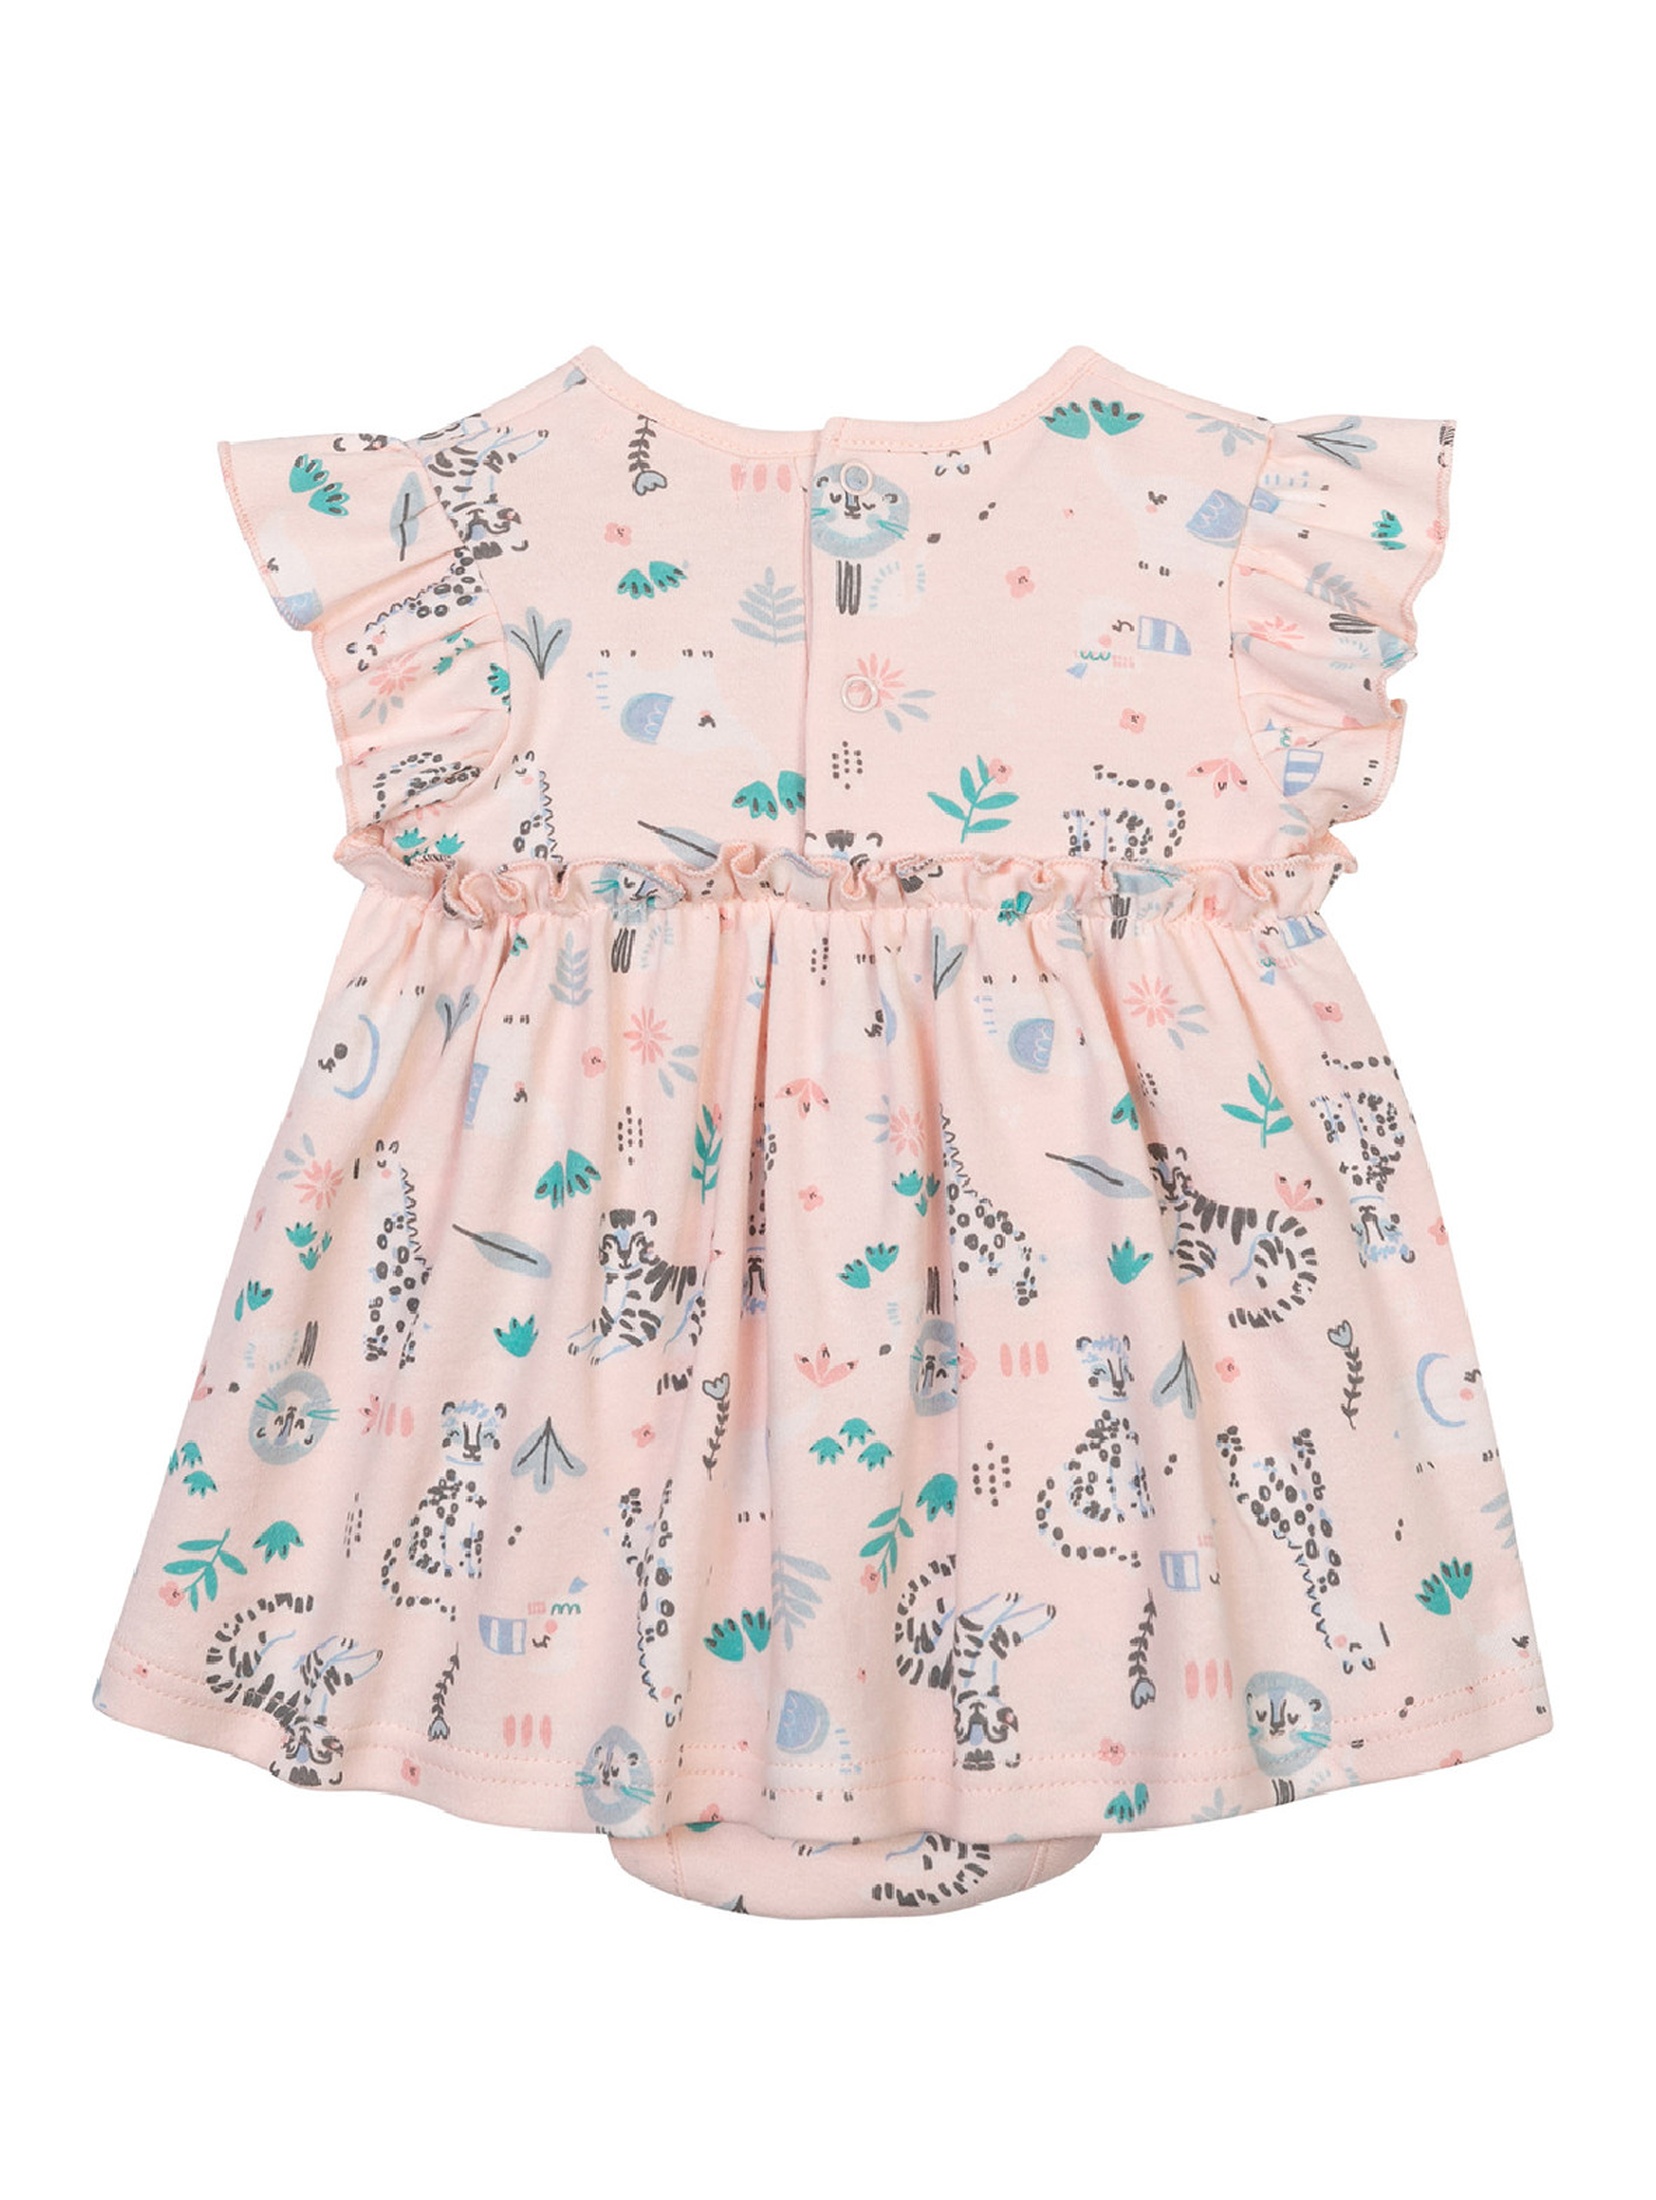 Bawełniane sukienko-body dla niemowlaka różowe